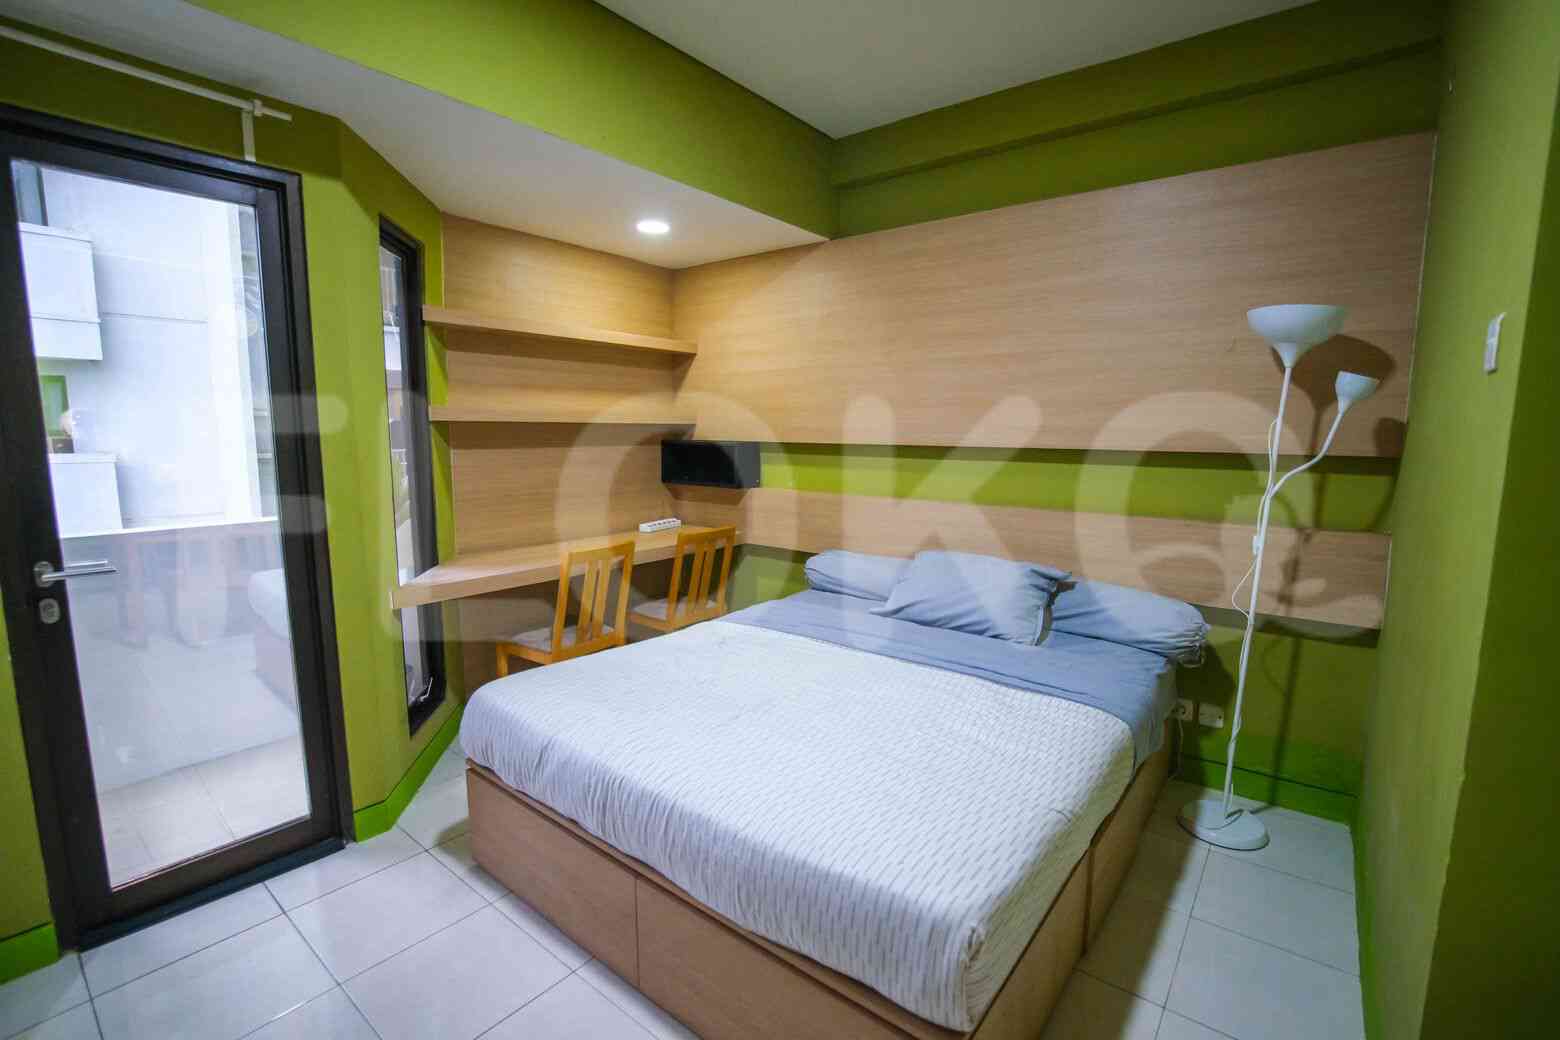 1 Bedroom on 15th Floor for Rent in Tamansari Sudirman - fsu5a1 2